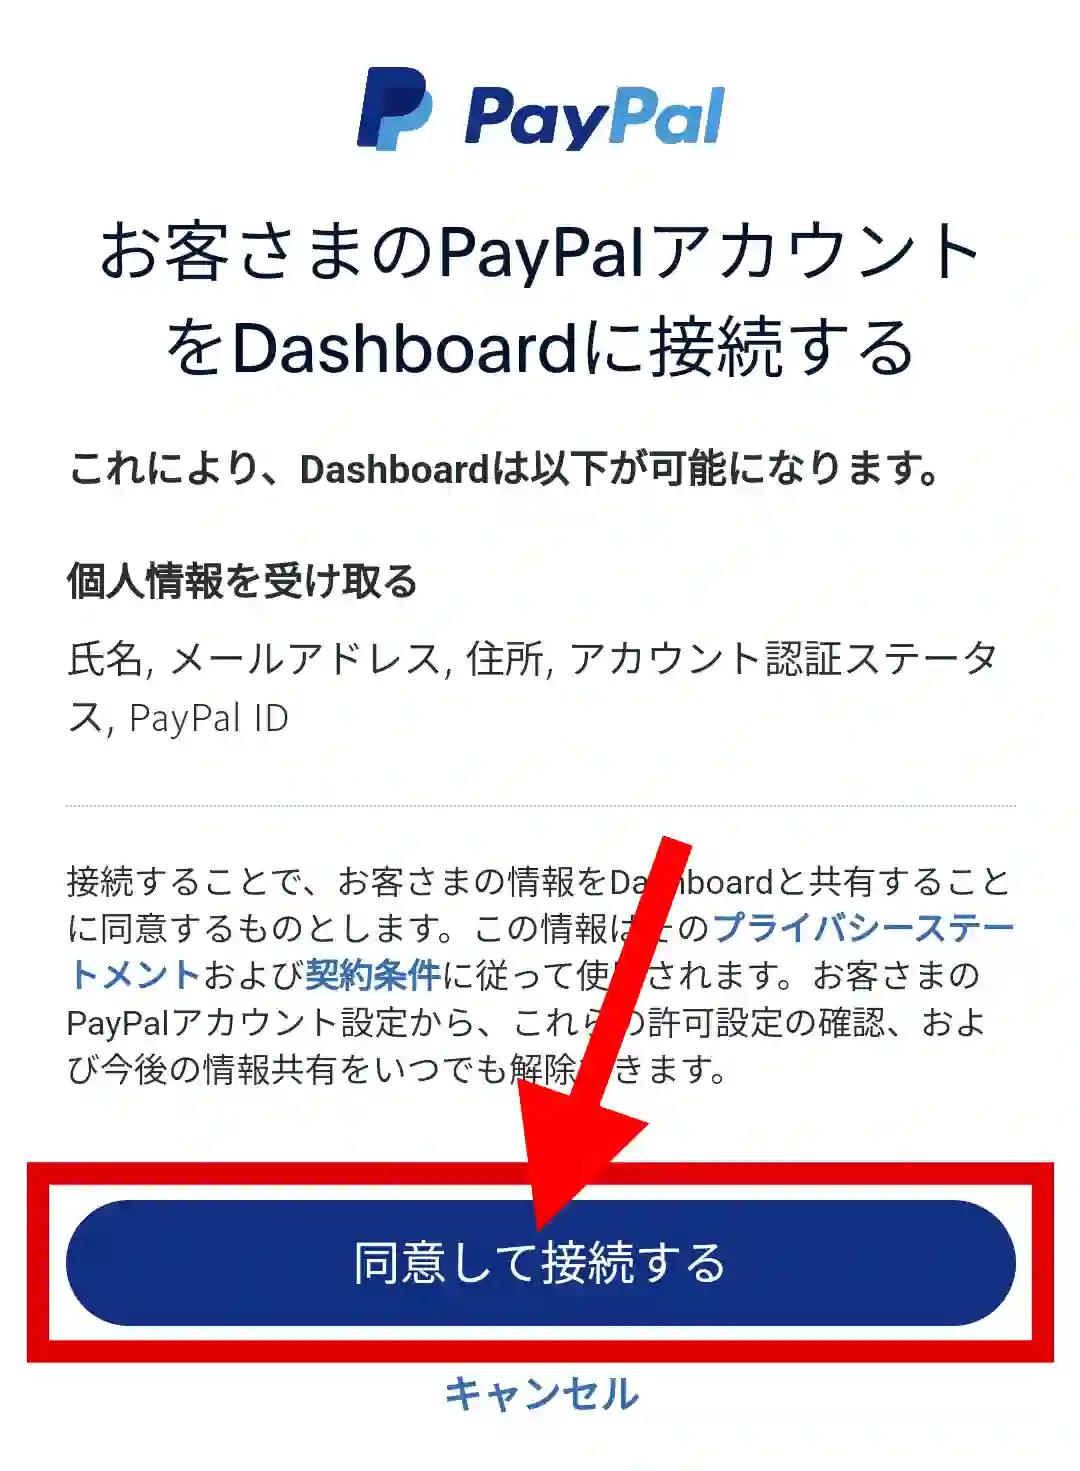 【画像付き】PayPal経由で現金化する手順